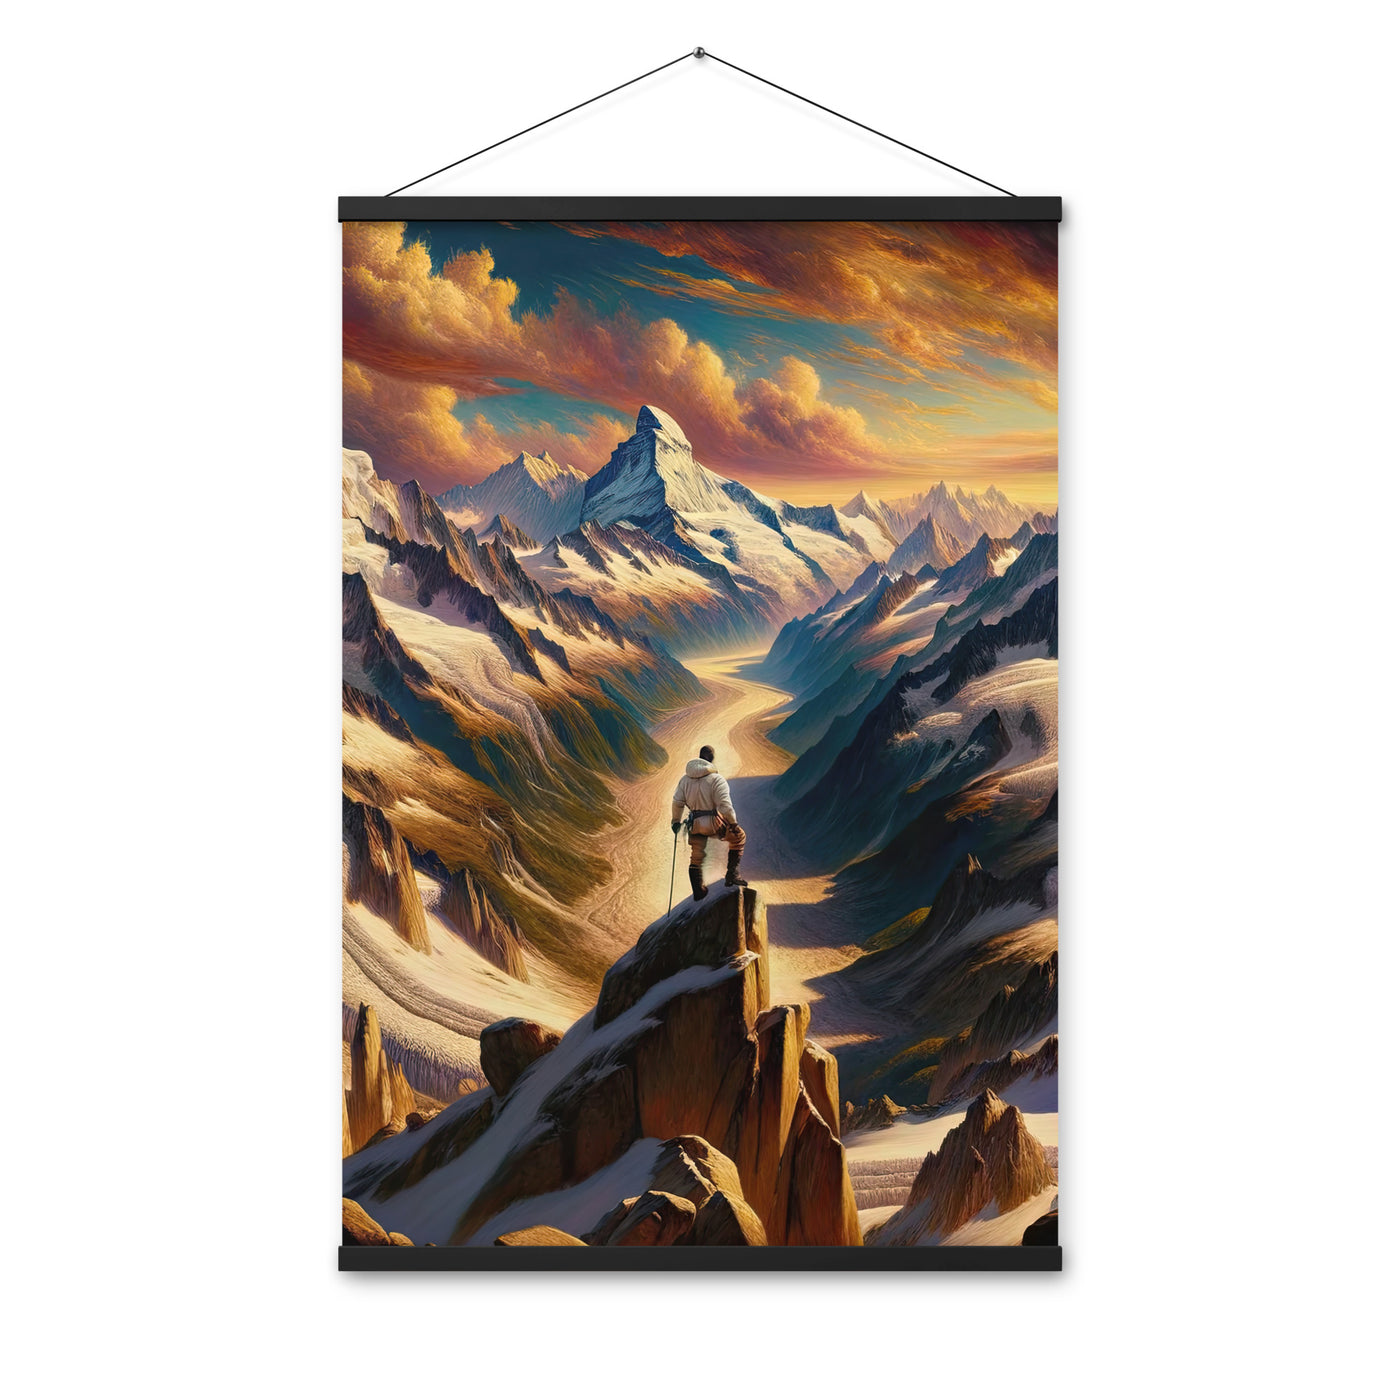 Ölgemälde eines Wanderers auf einem Hügel mit Panoramablick auf schneebedeckte Alpen und goldenen Himmel - Enhanced Matte Paper Poster wandern xxx yyy zzz 61 x 91.4 cm